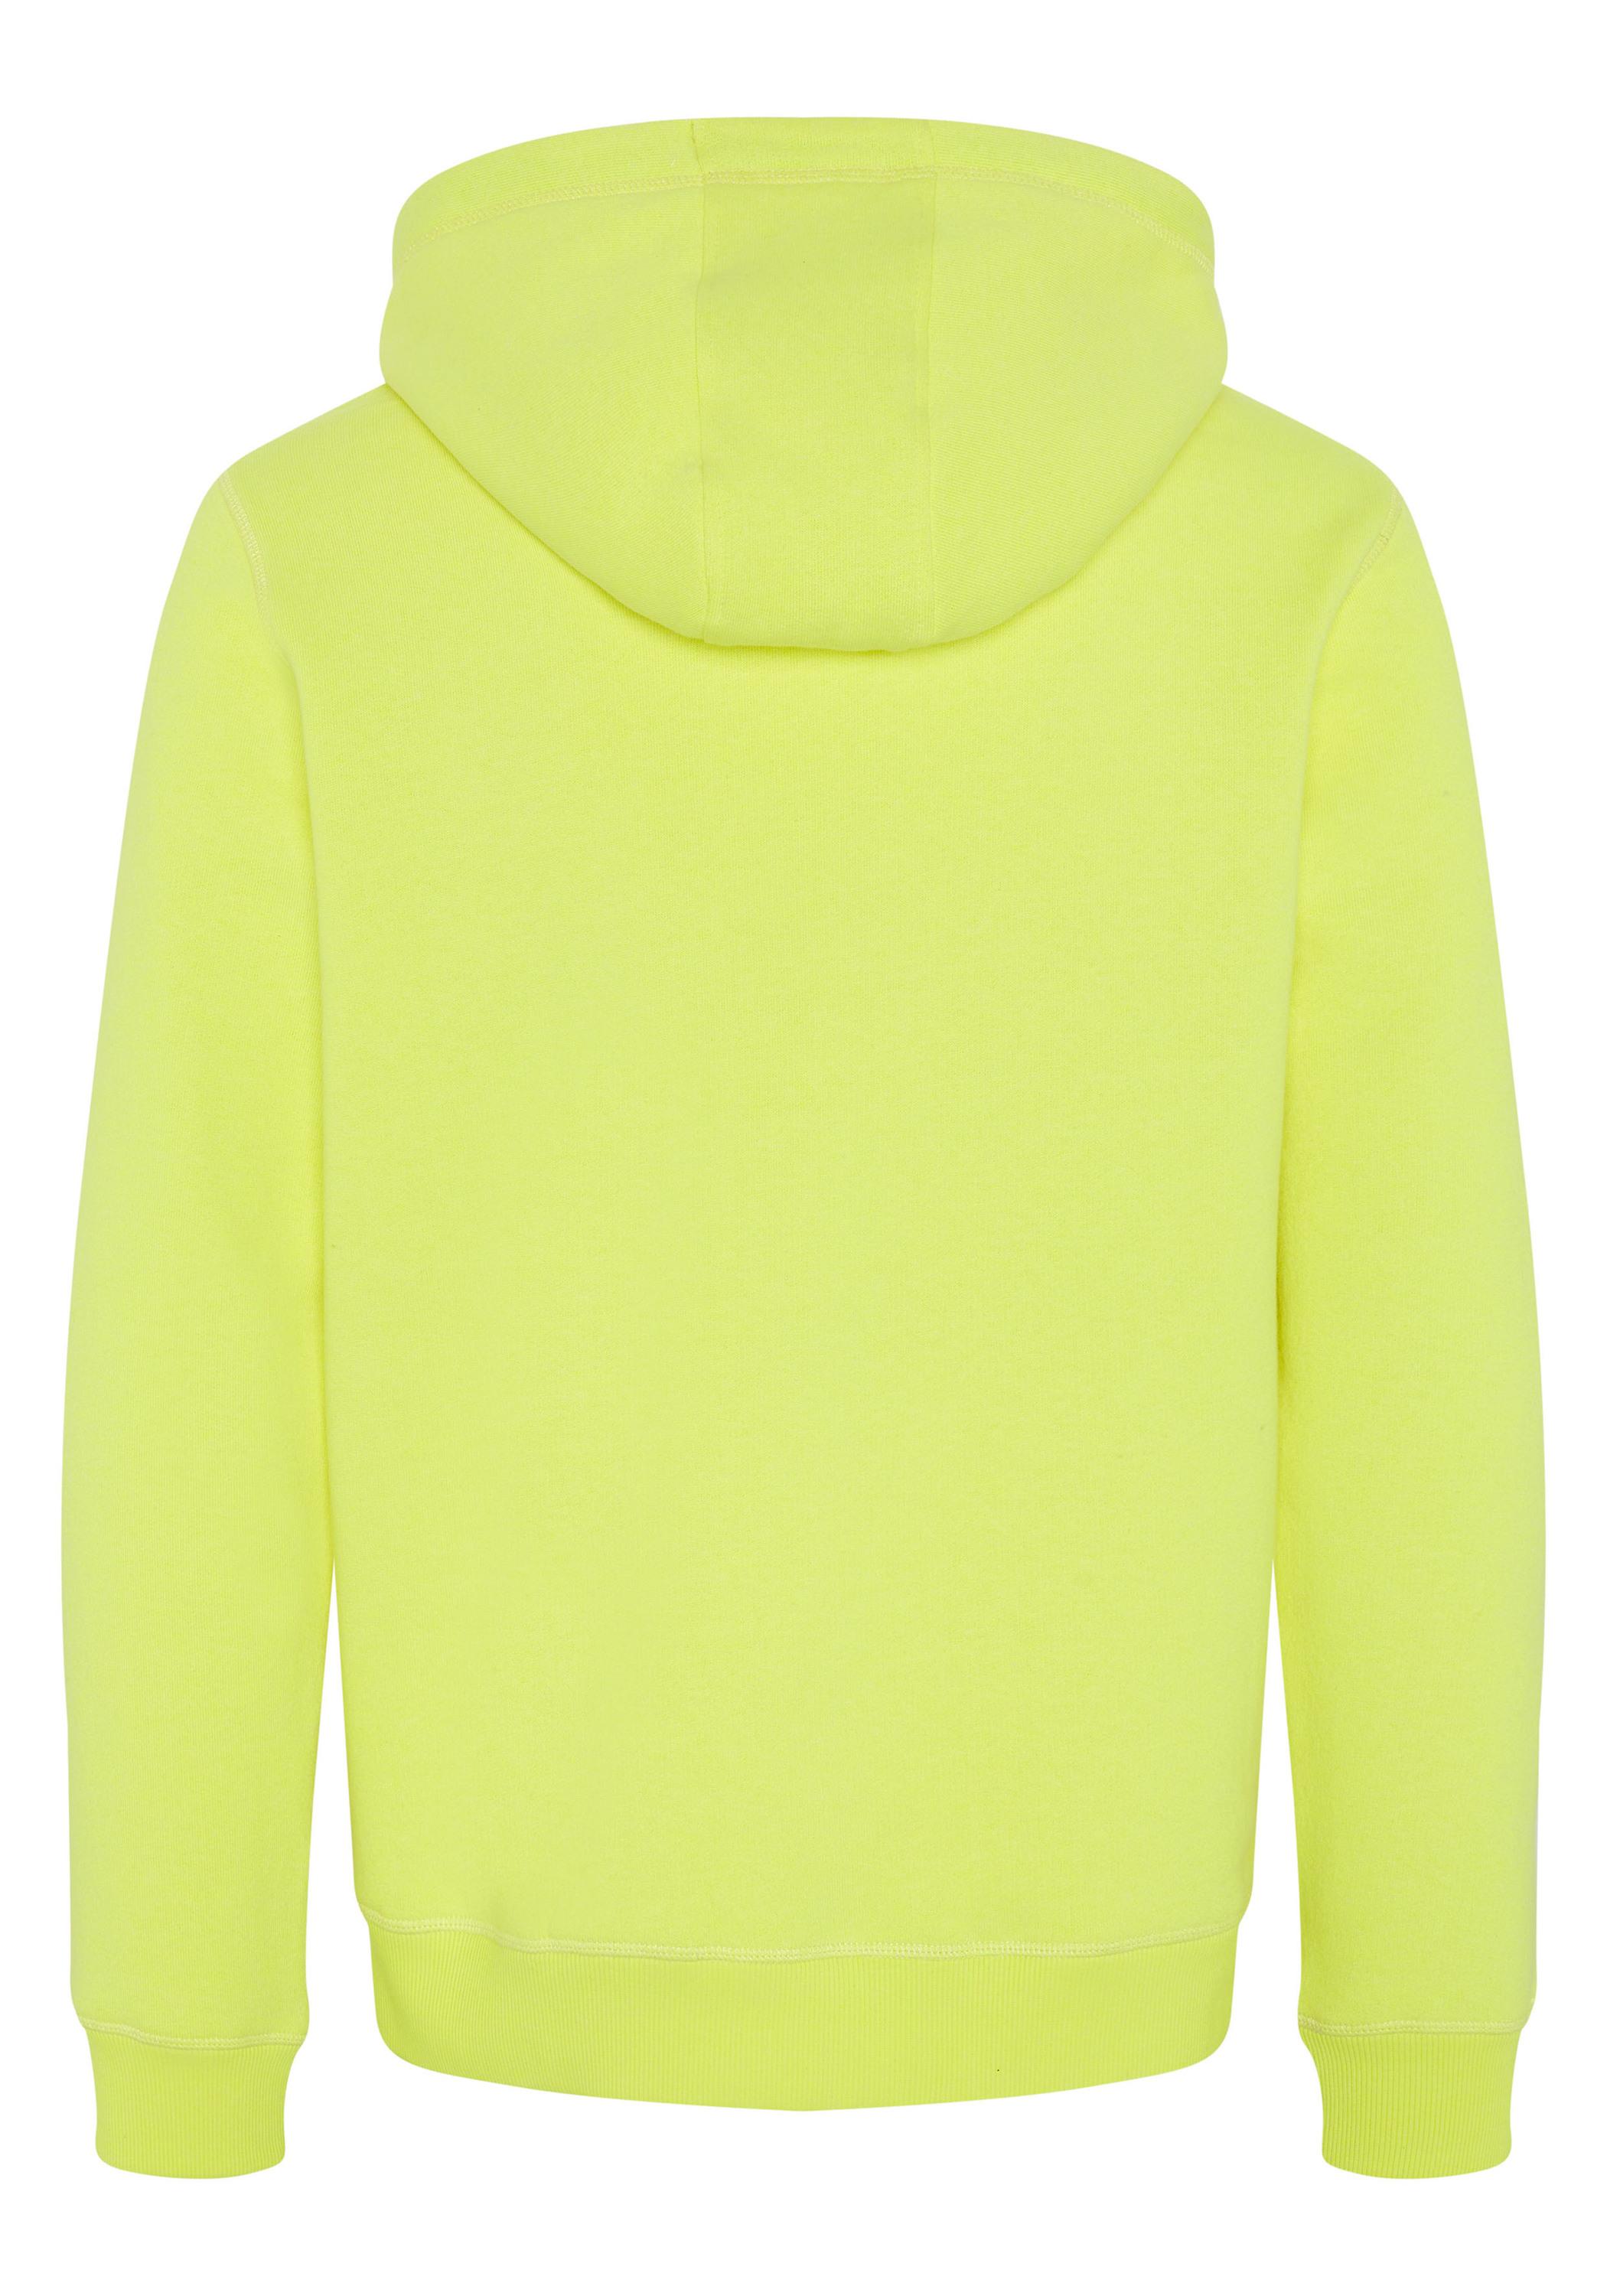 Chiemsee Kapuzensweatshirt Sweatshirt Herren Yellow Safety Shop kaufen von im Online SportScheck